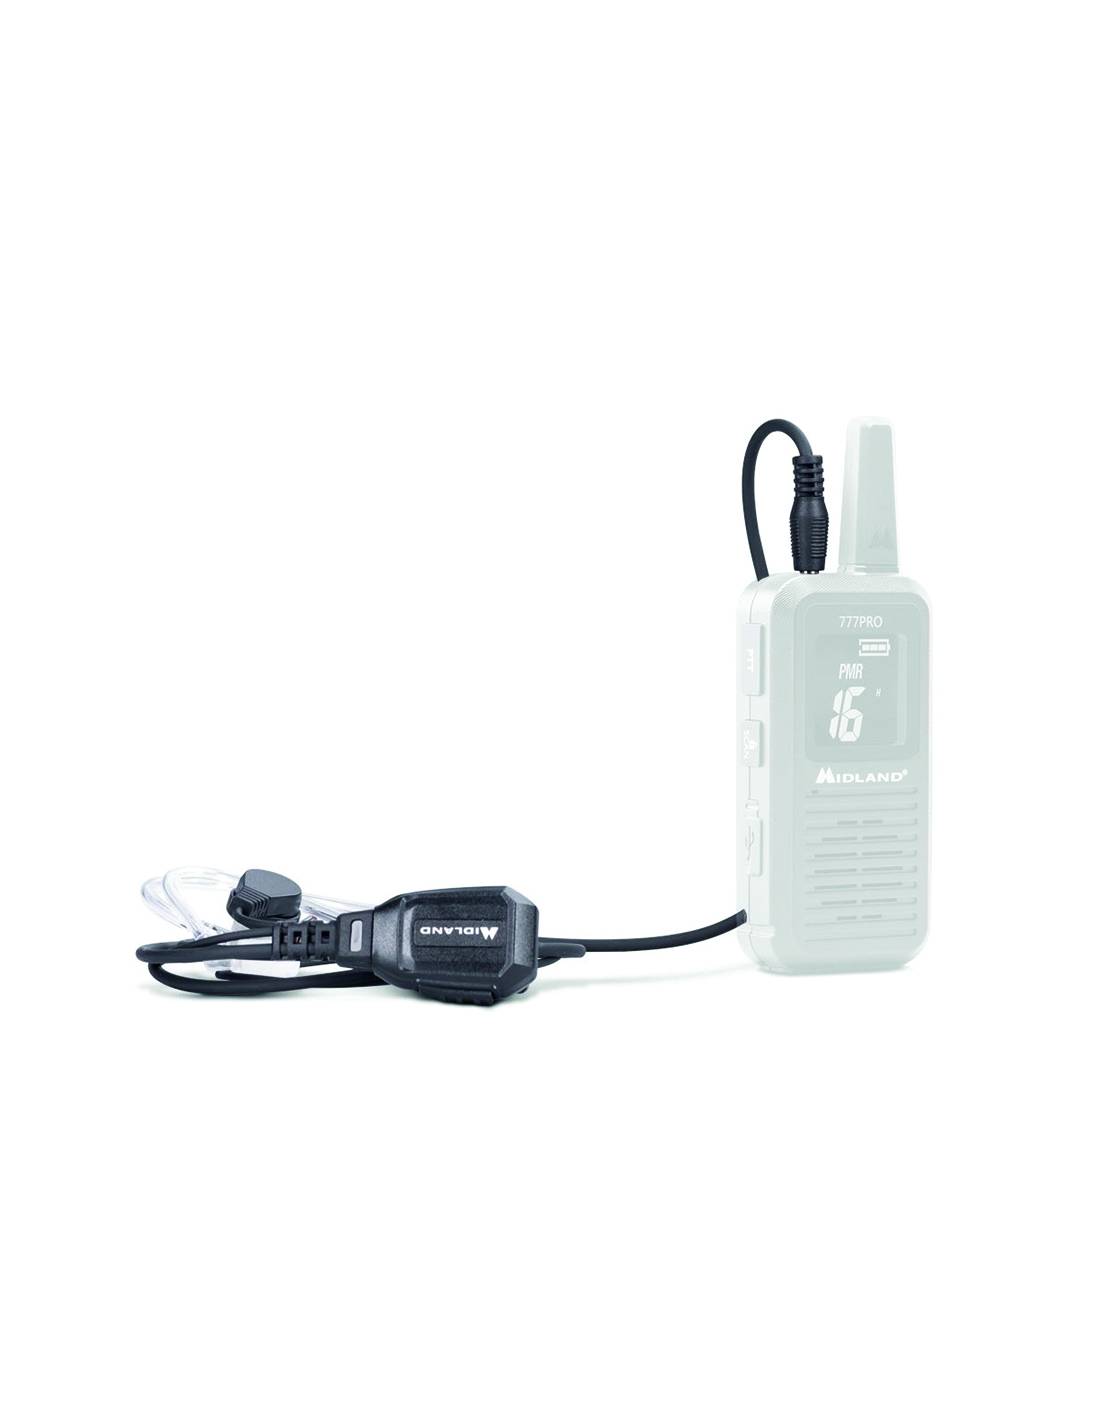 Micrófono Auricular Ma21 Para Radio 777 Pro Midland - negro - 